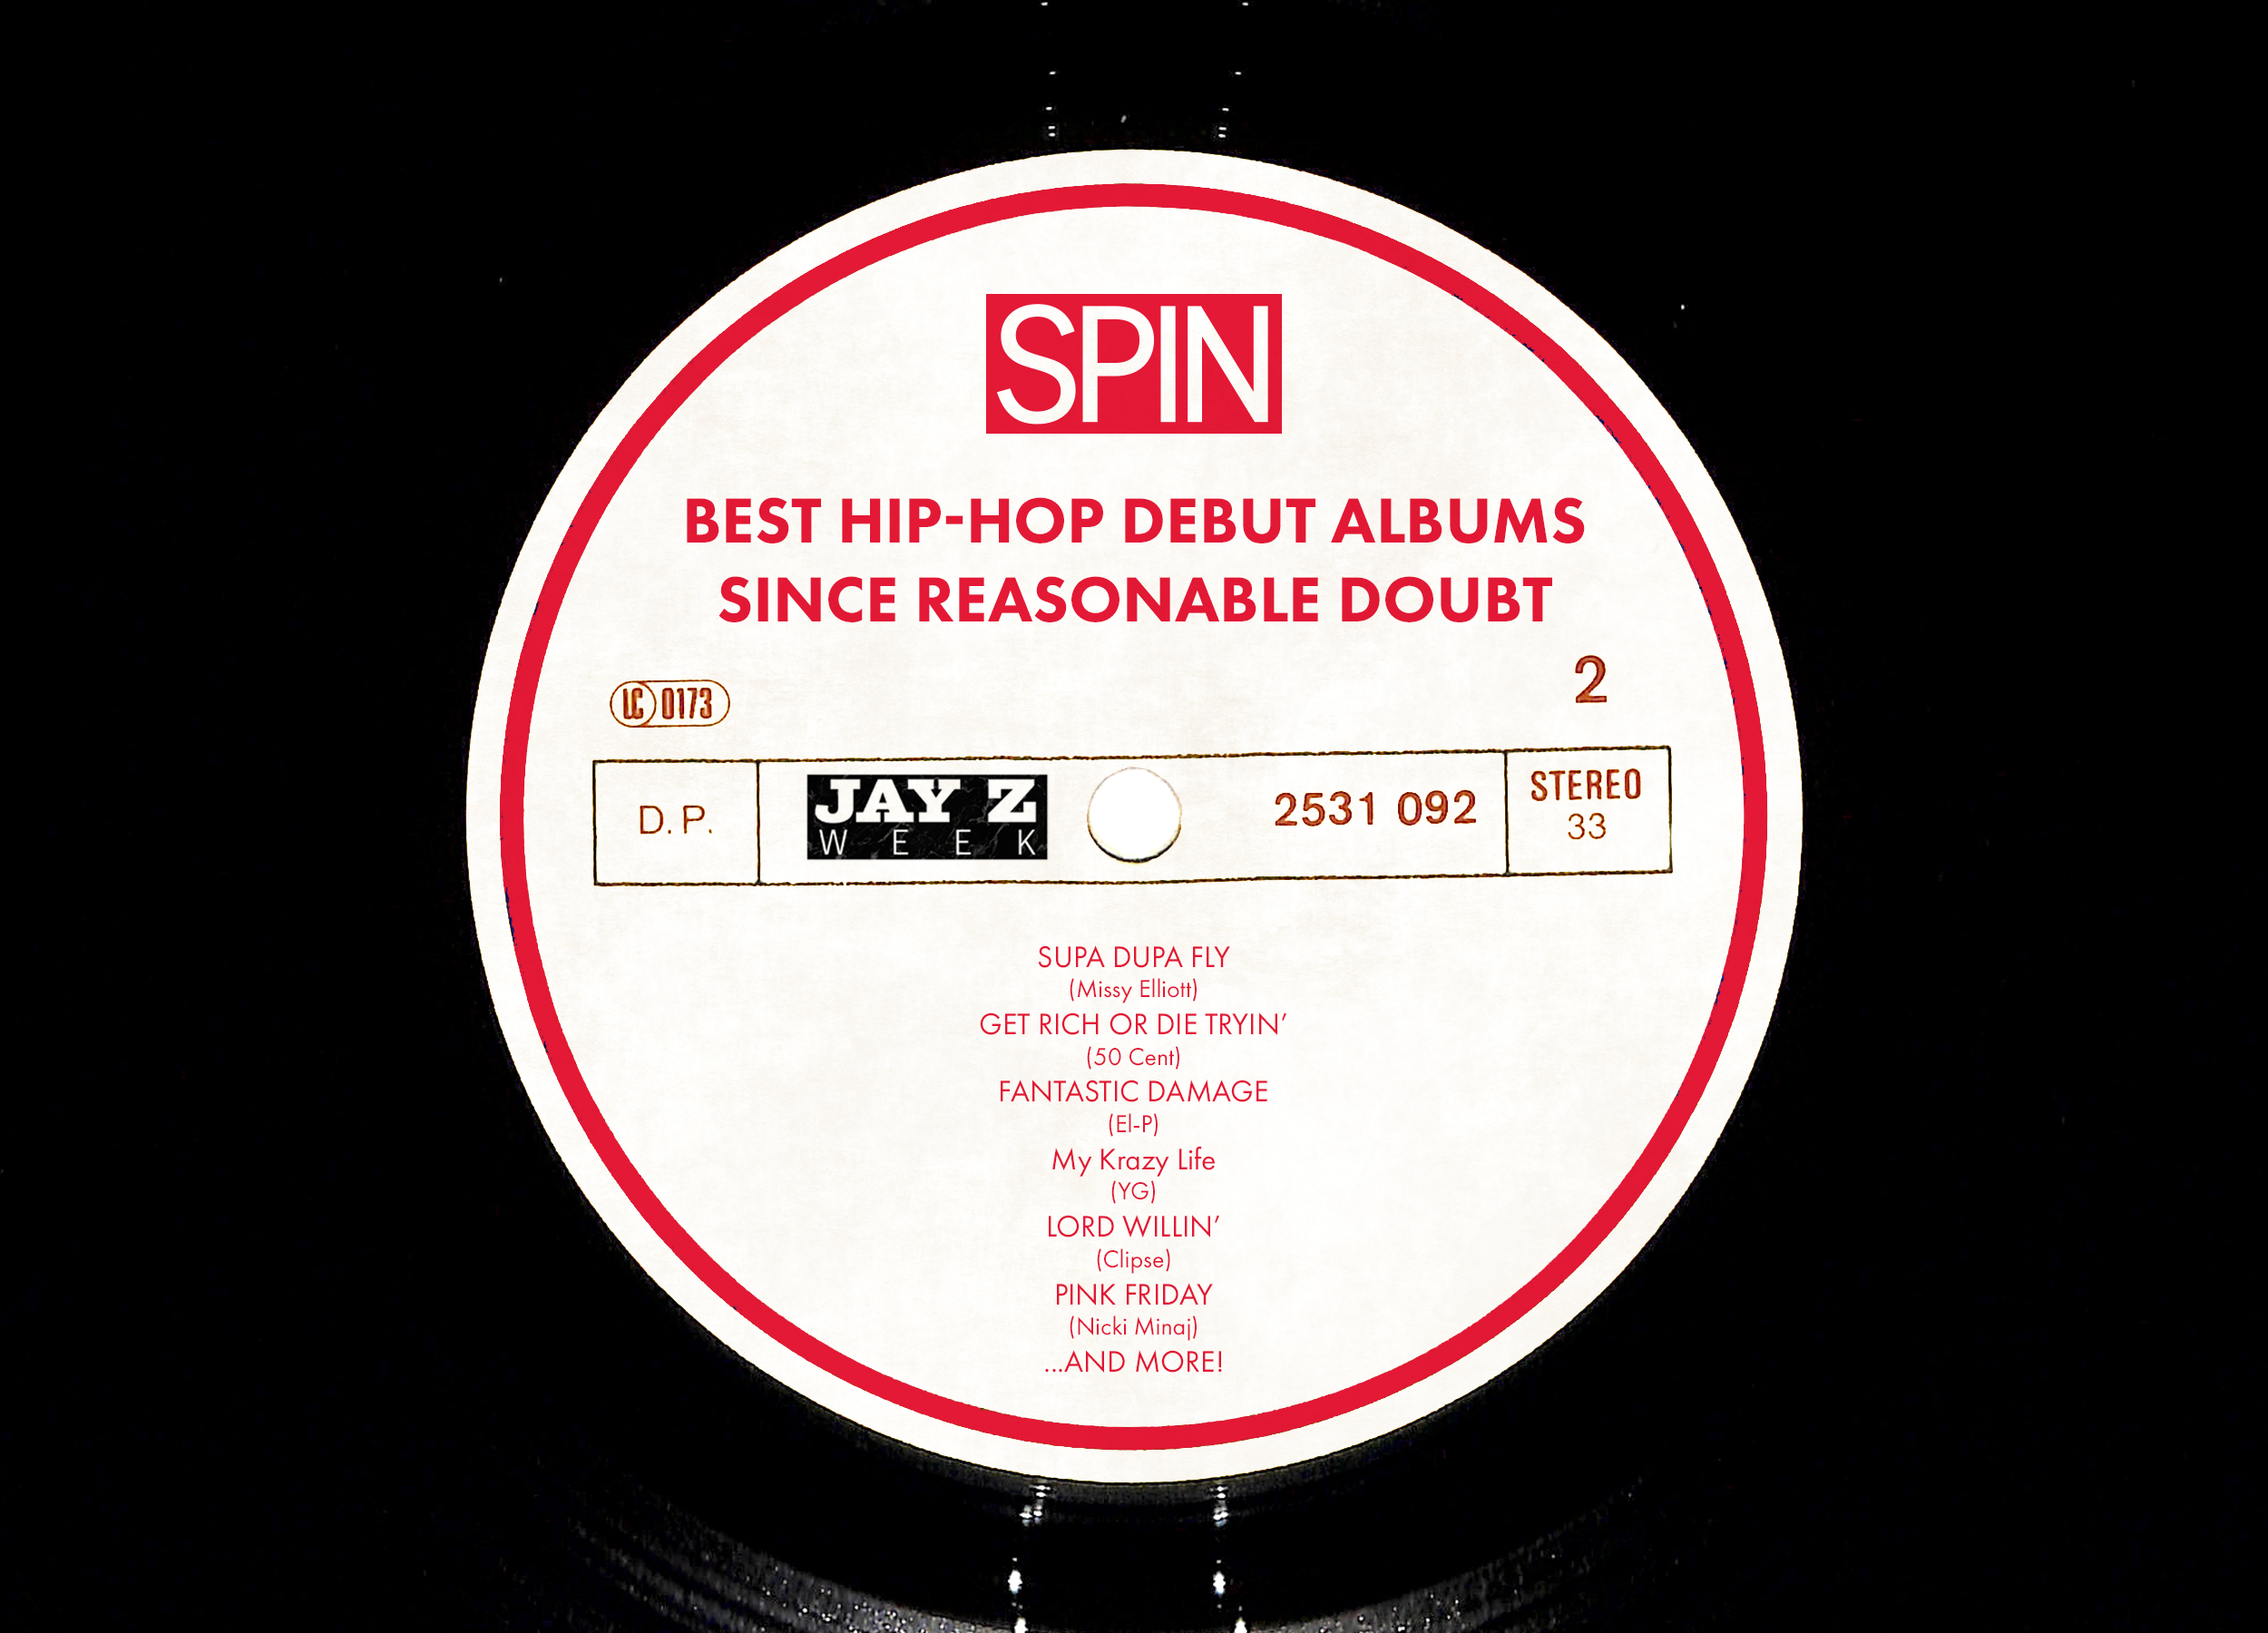 25 Of The Best Trap Albums Ever - Hip Hop Golden Age Hip Hop Golden Age